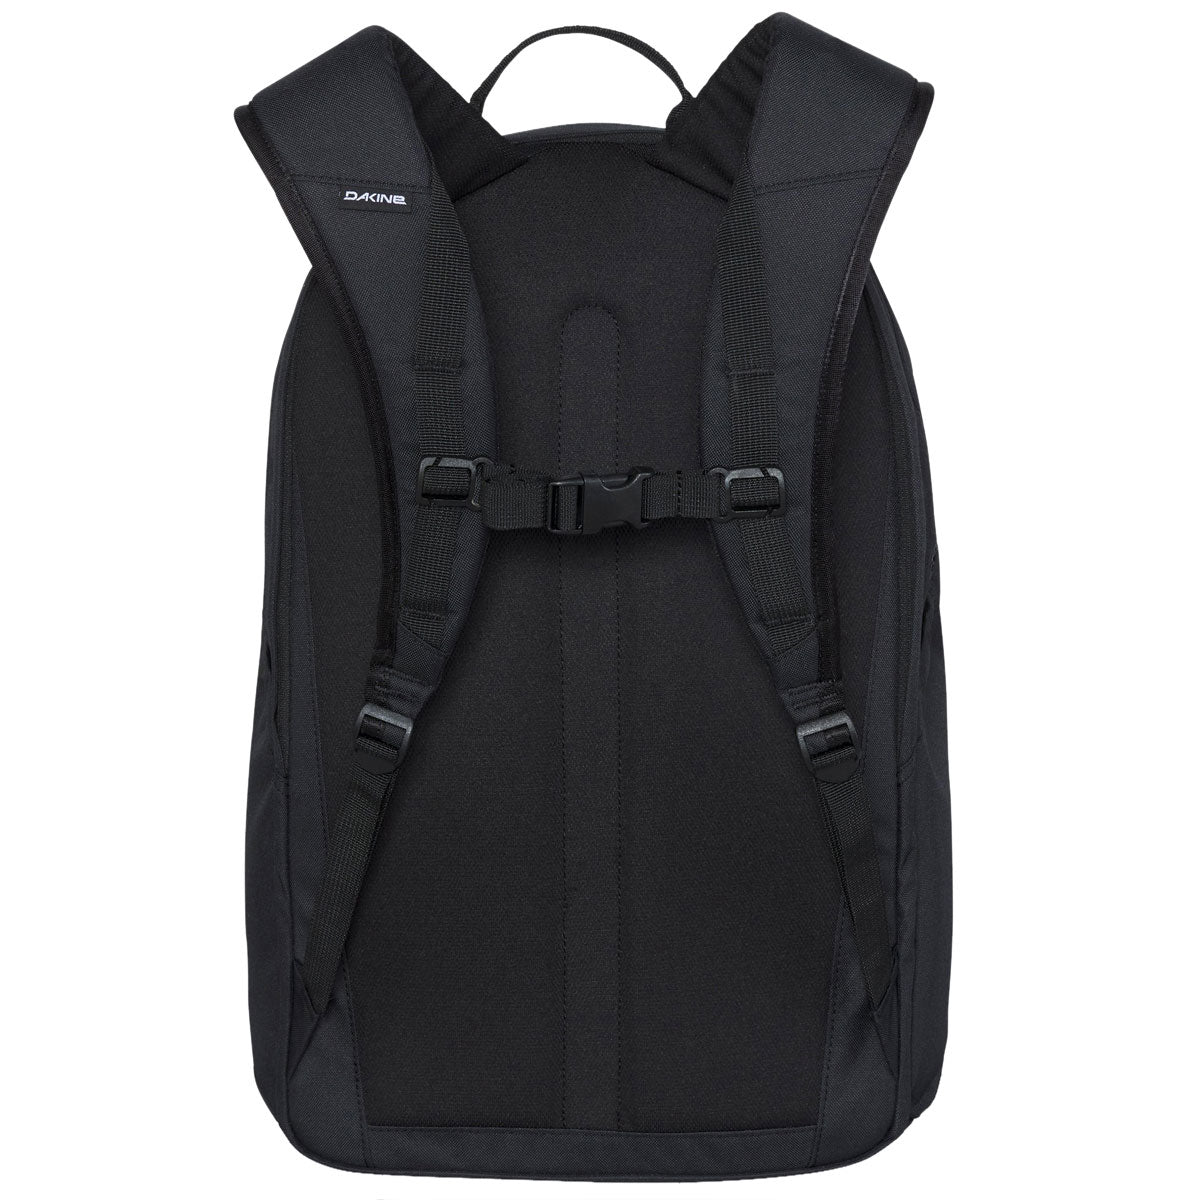 Dakine Method 32L Backpack - Black image 2